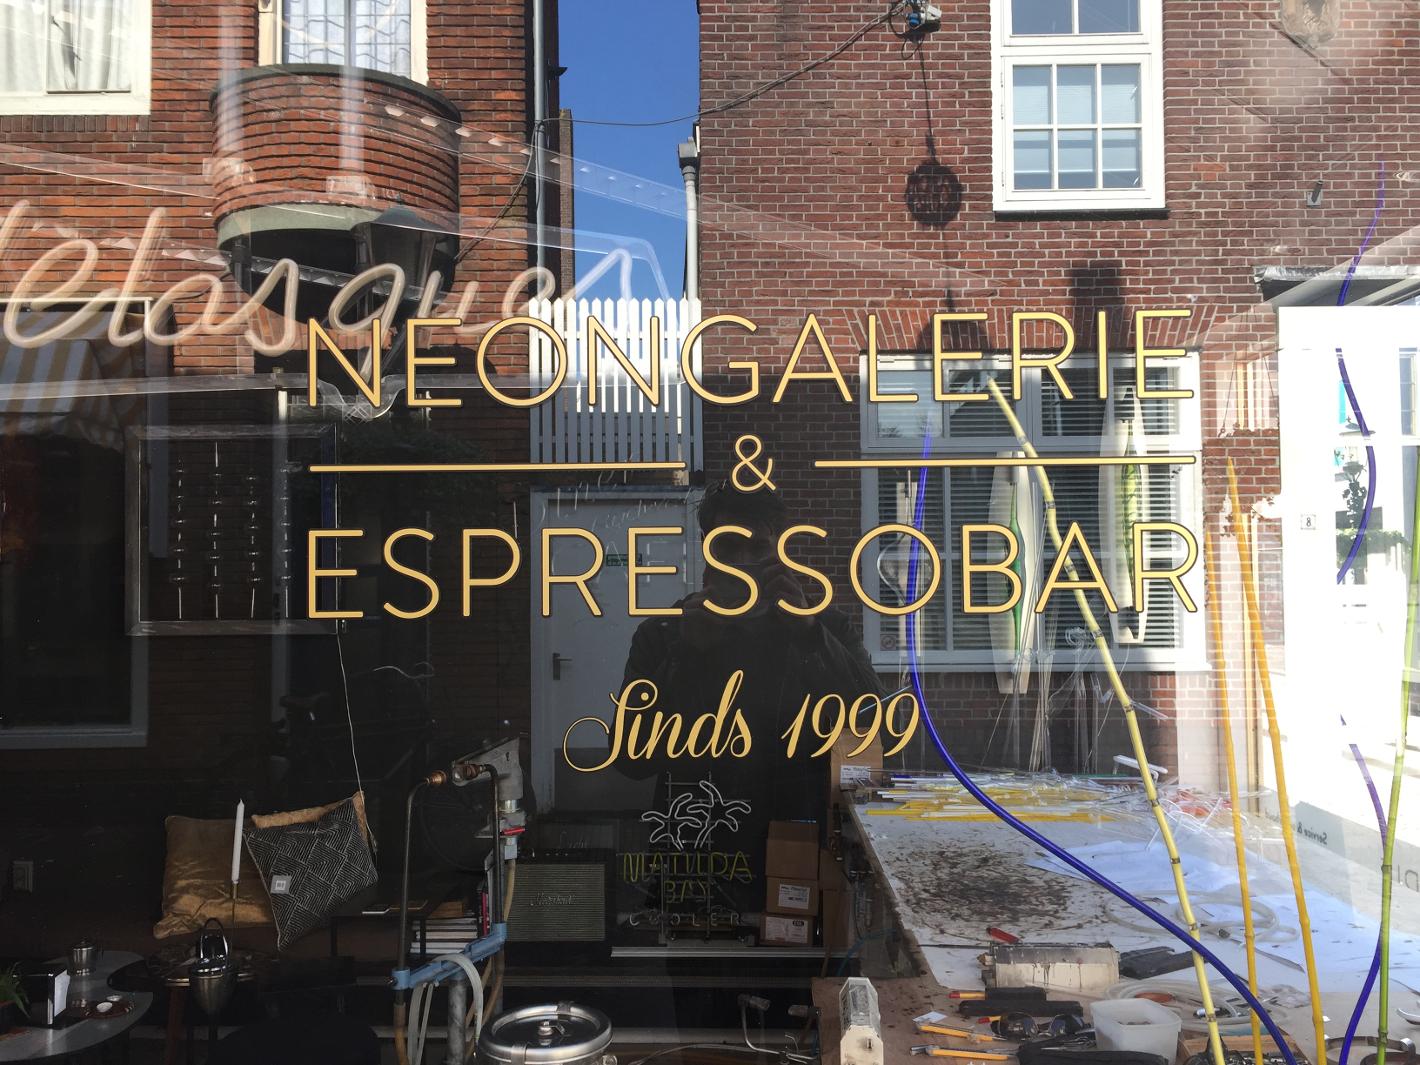 Foto Ray of Light Neongalerie & Espressobar in Alkmaar, Eten & drinken, Koffie, thee & gebak, Bezienswaardigheden - #1